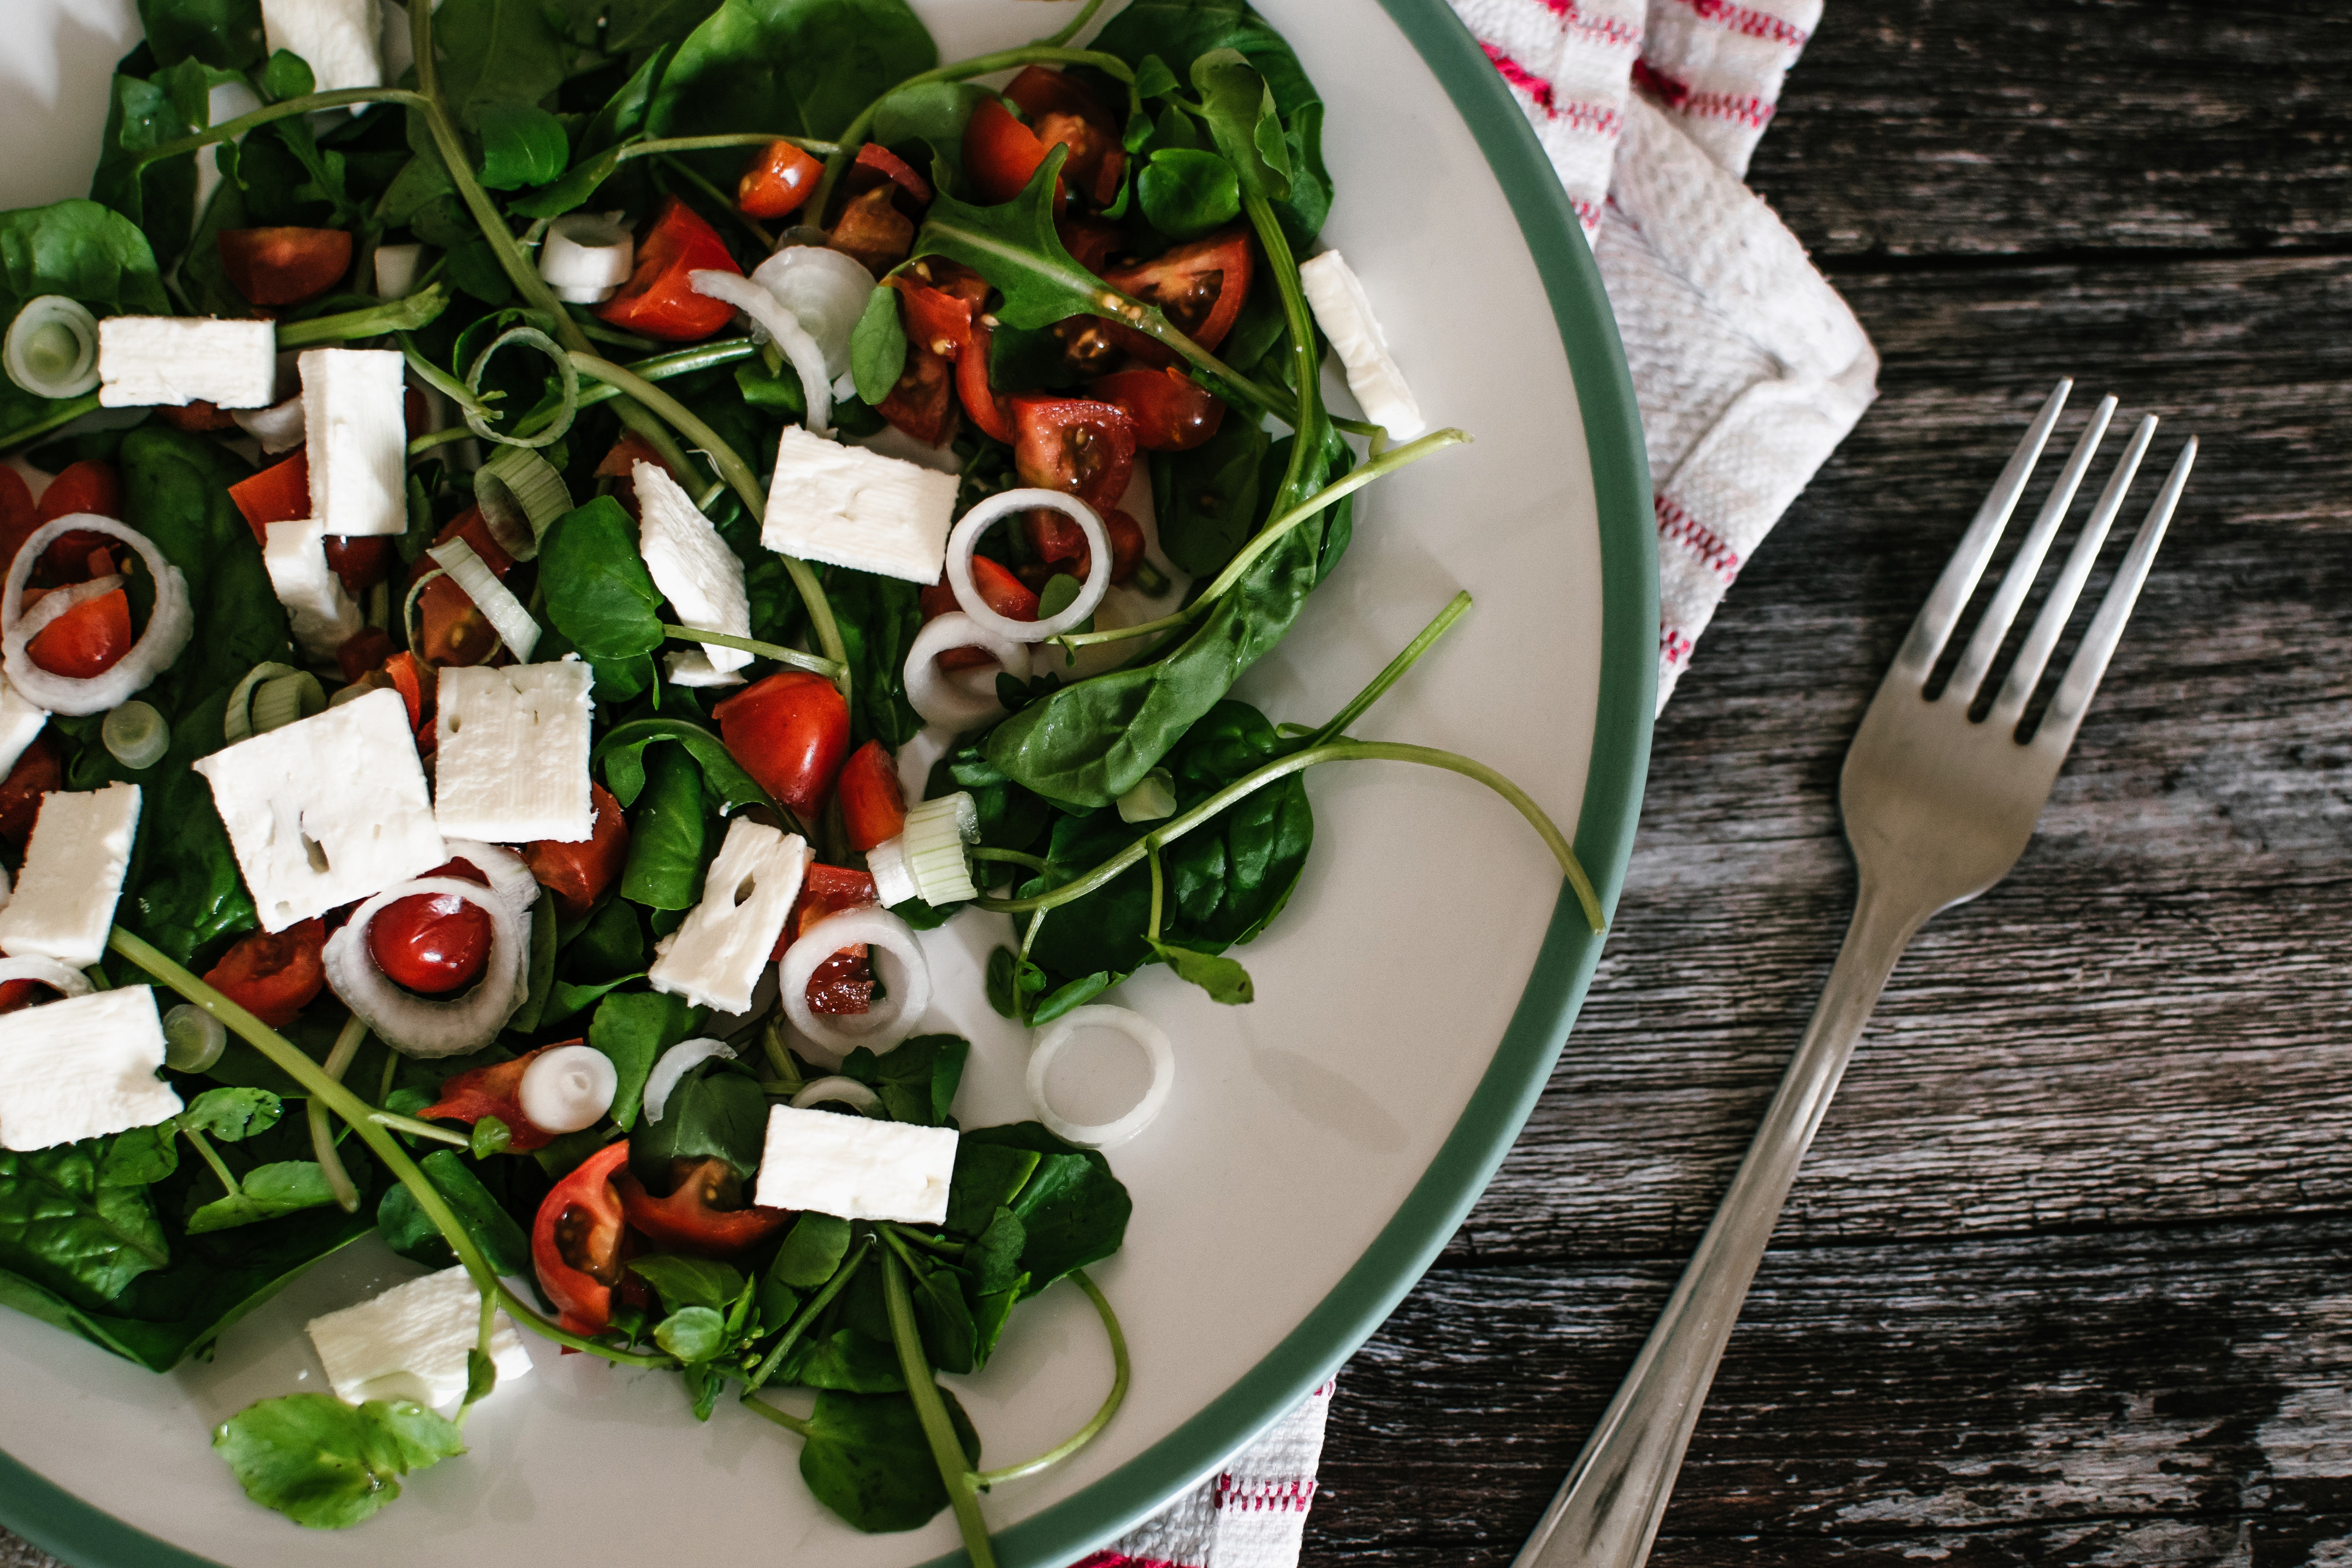 KalorienFalle Salat - 5 Tipps die Du beachten solltest